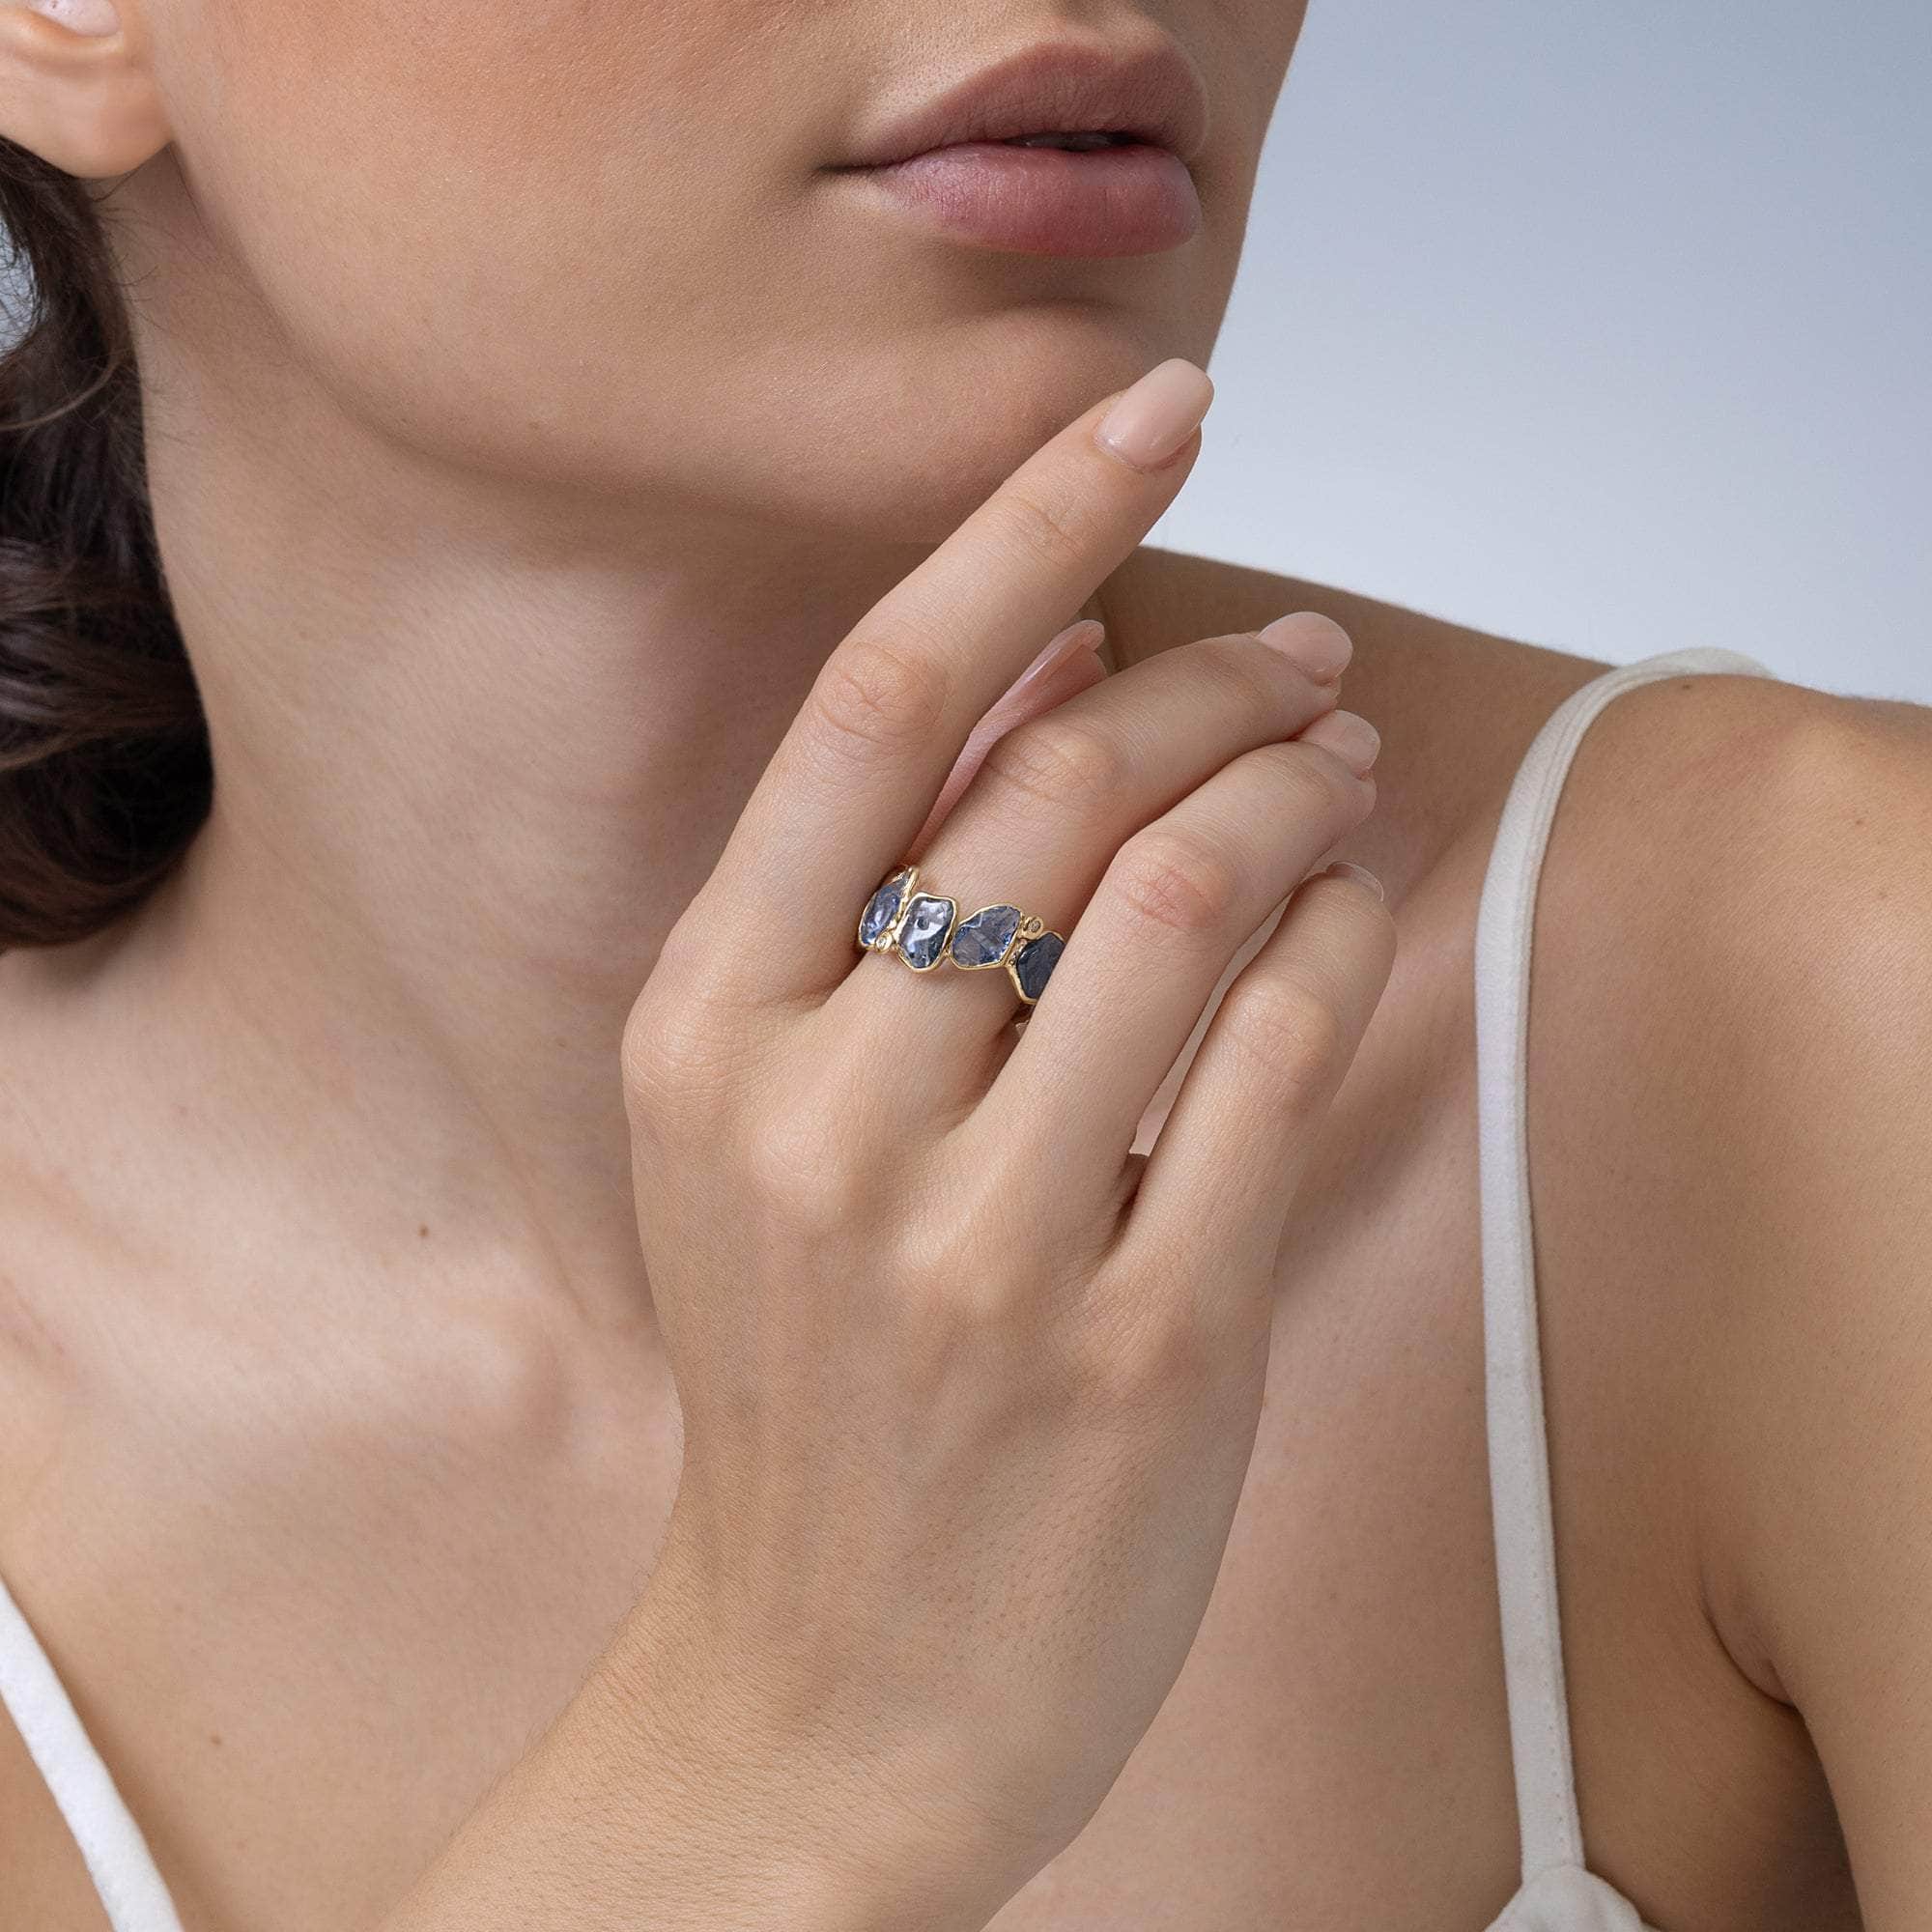 Cyrus Sapphire and Diamond Ring GERMAN KABIRSKI